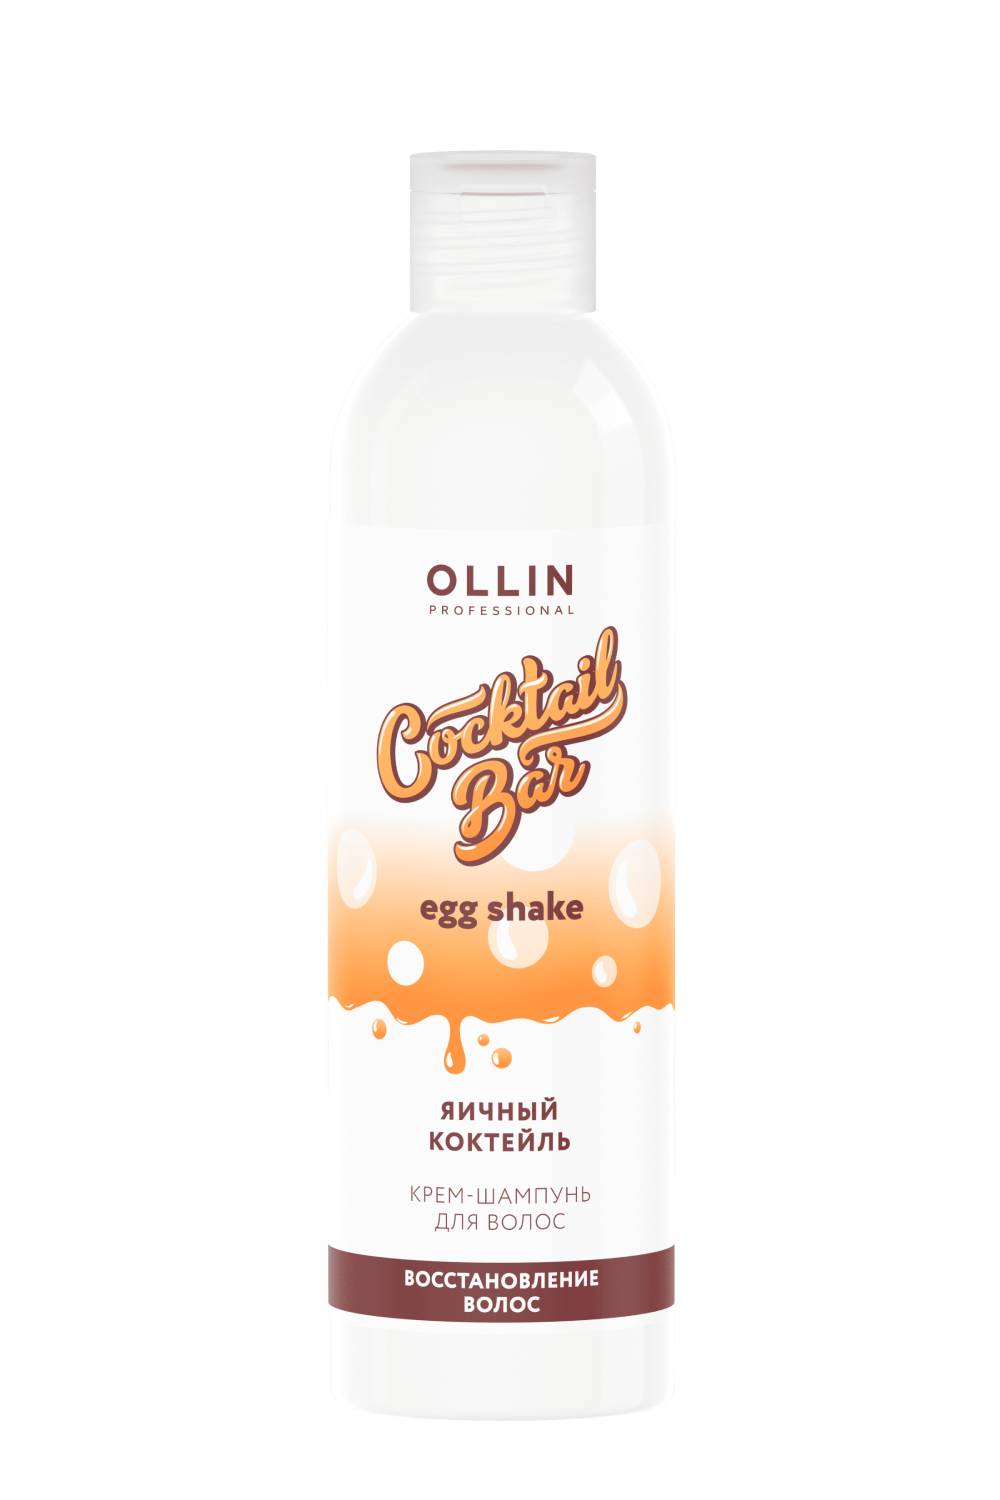 Ollin Professional Крем-шампунь Яичный коктейль для восстановления волос, 400 мл (Ollin Professional, Уход за волосами)